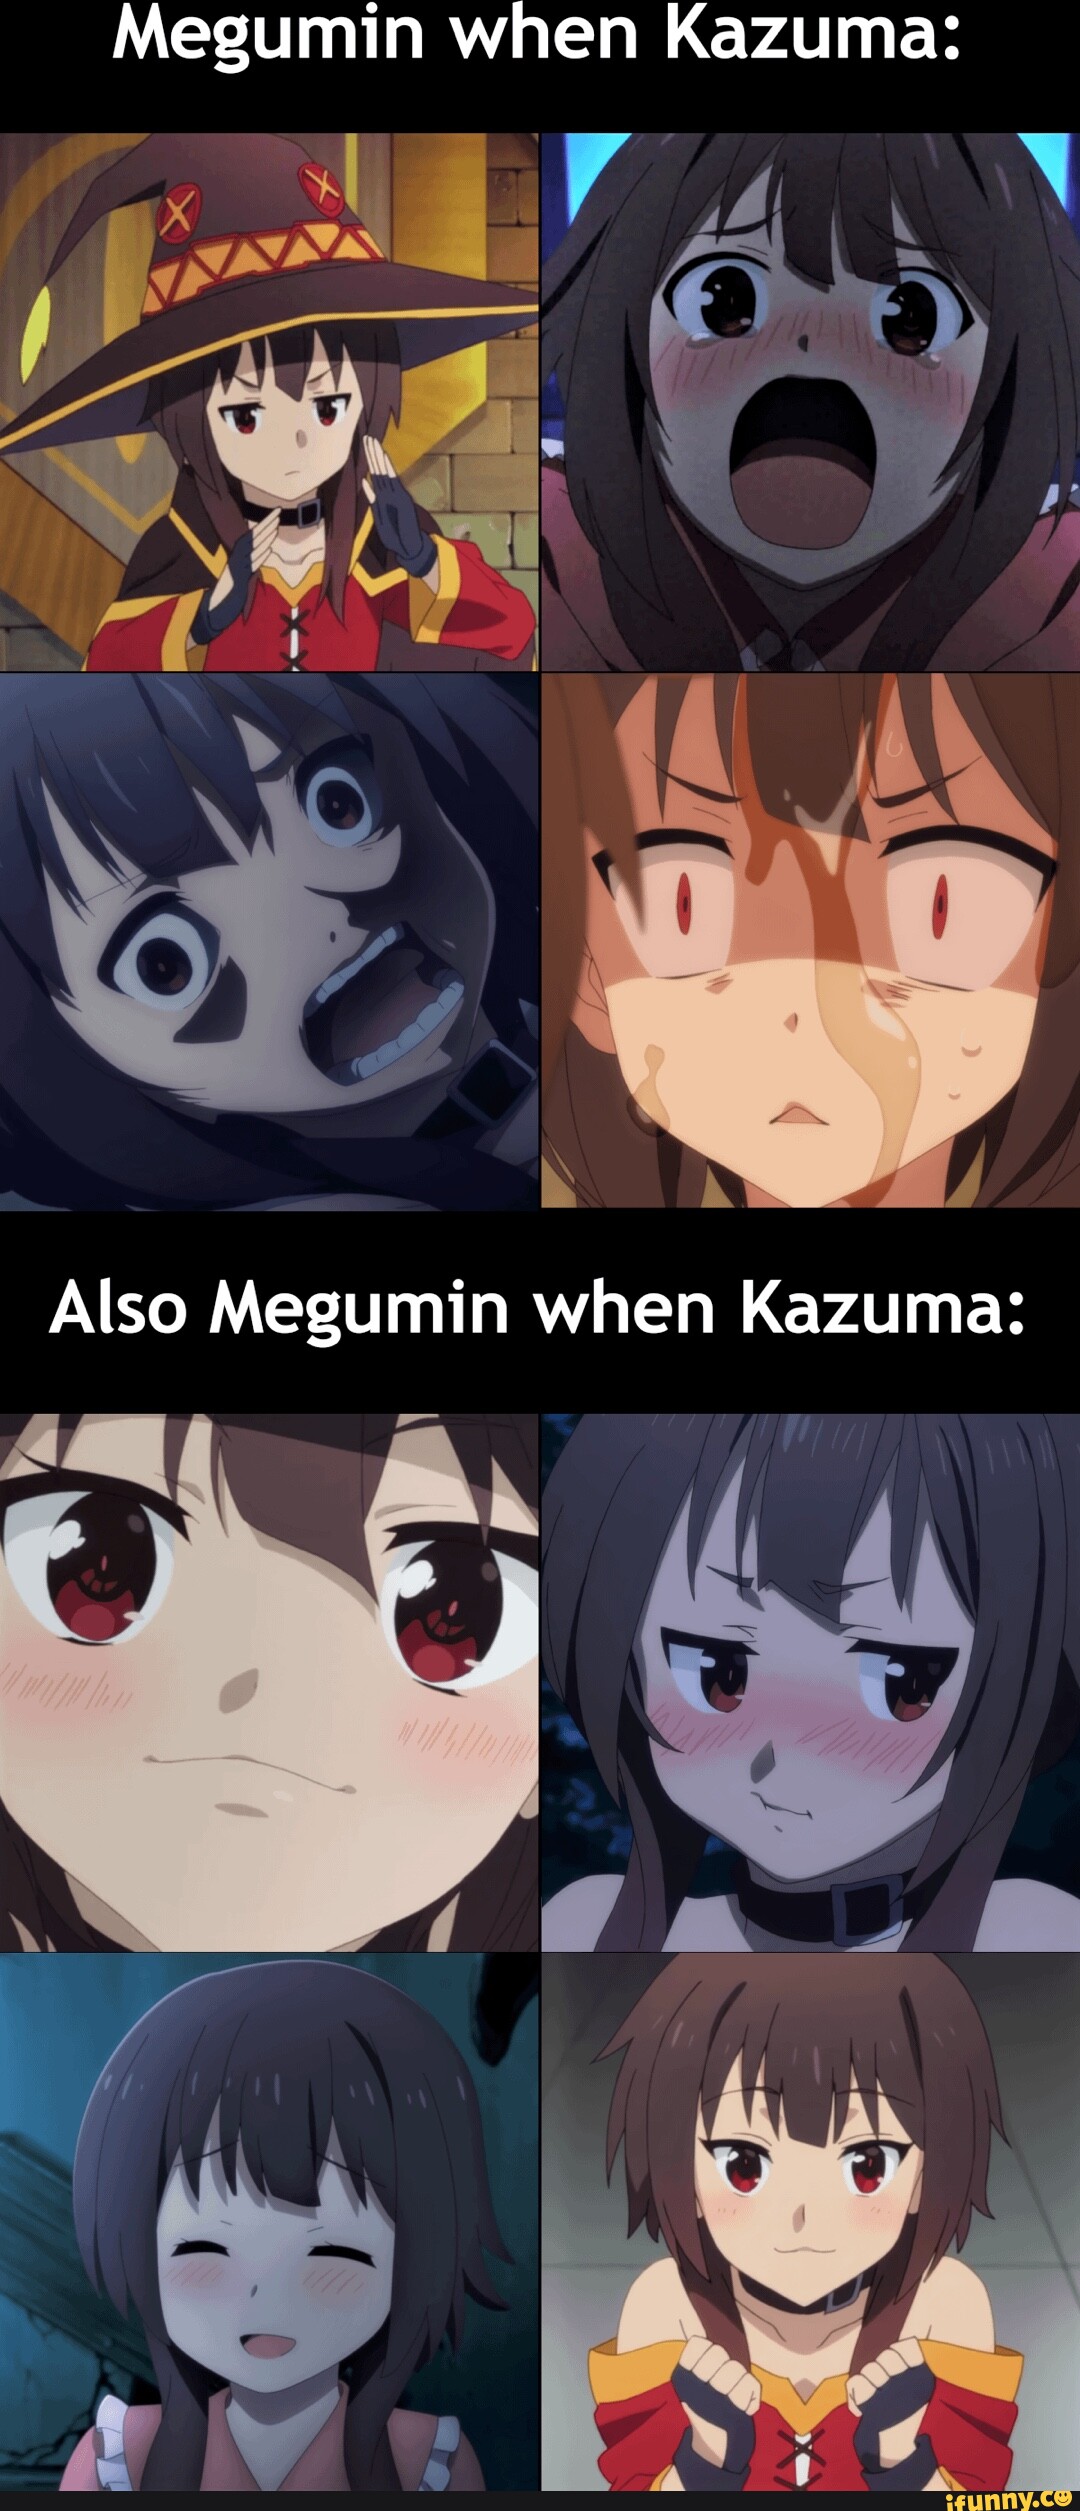 4 memes de megumin y 1 del gran lord kazuma